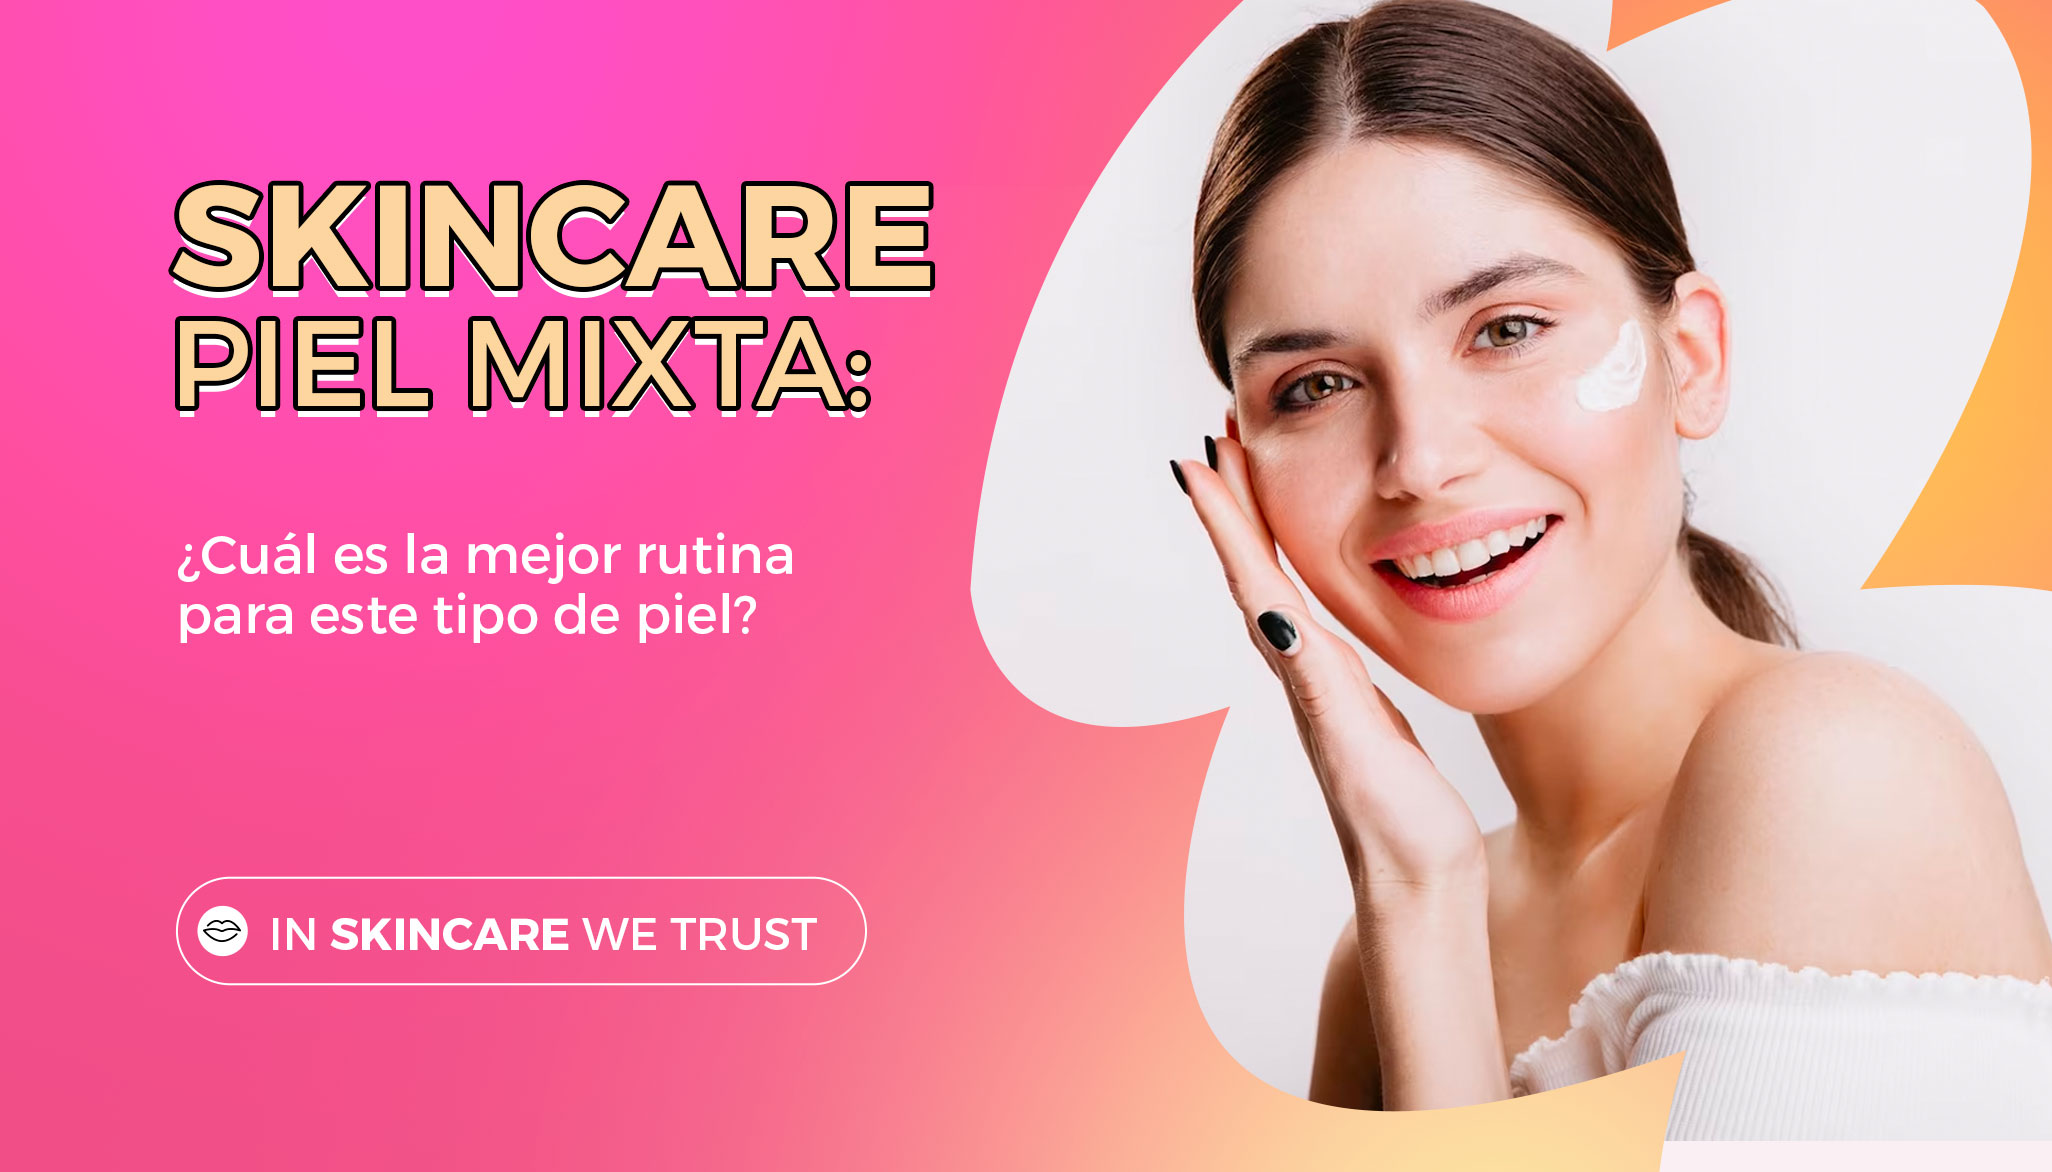 Skincare Piel Mixta: ¿Cuál es la mejor rutina para este tipo de piel?